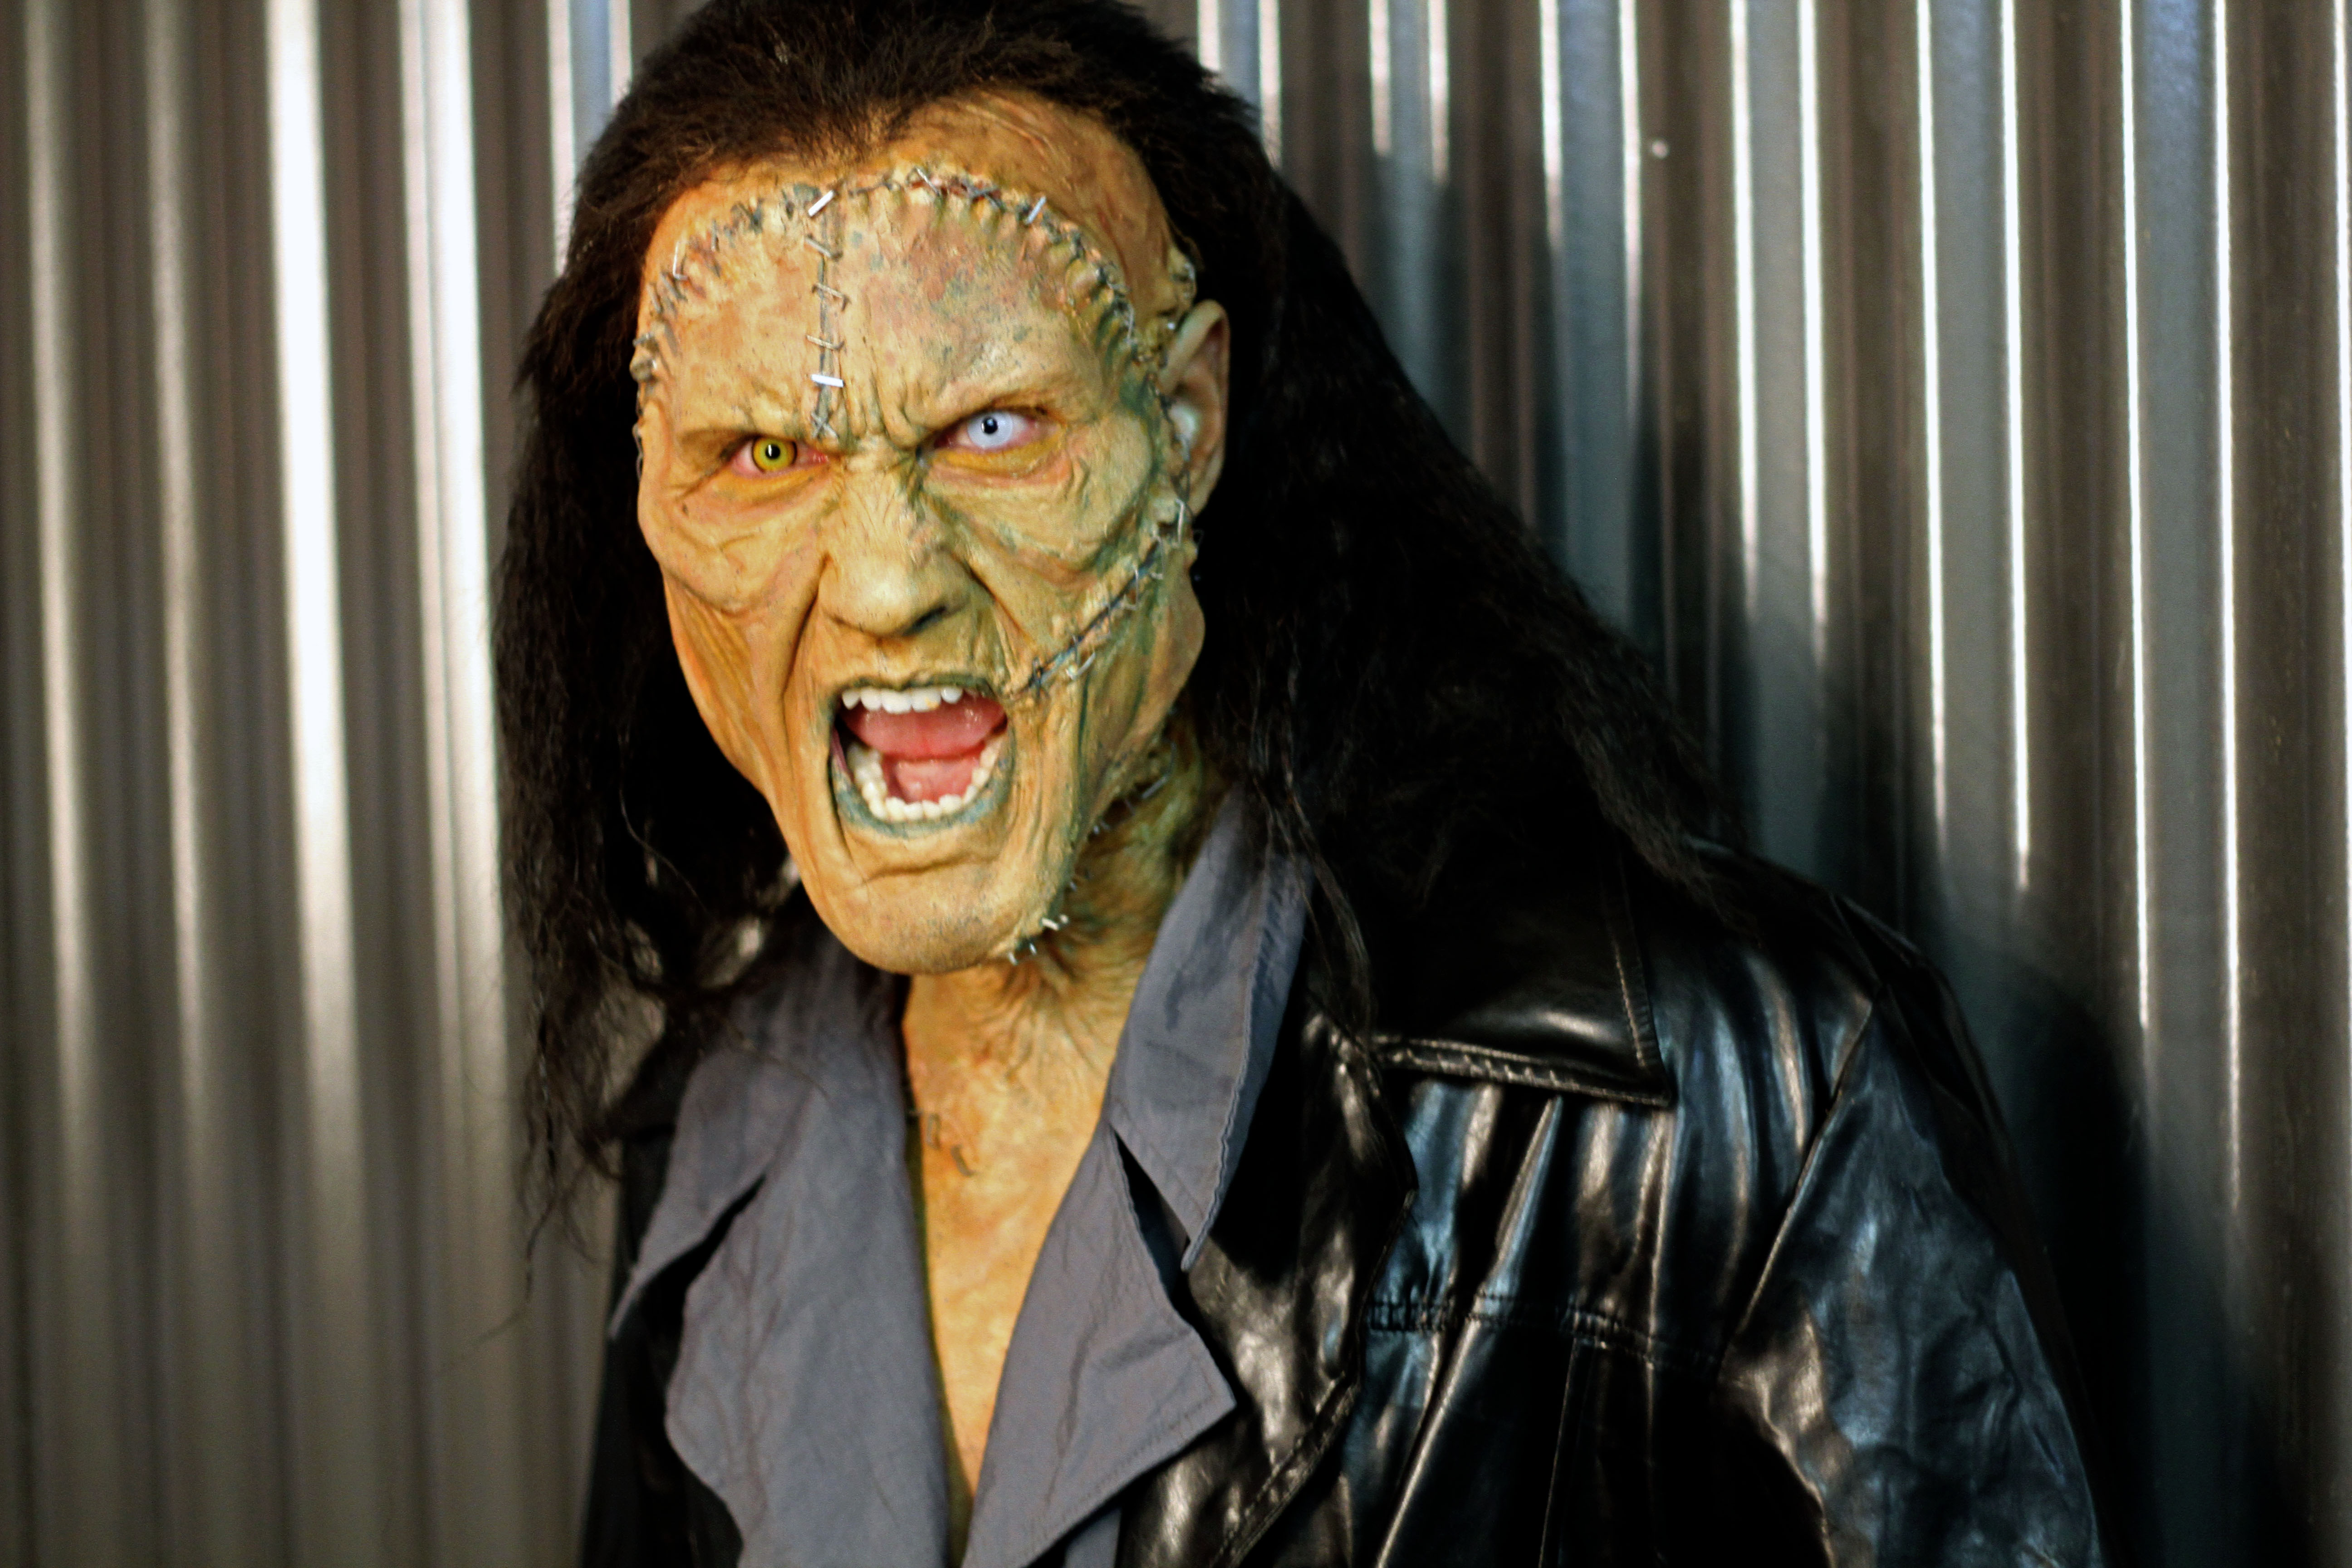 Ivan Djurovic as Frankenstein.